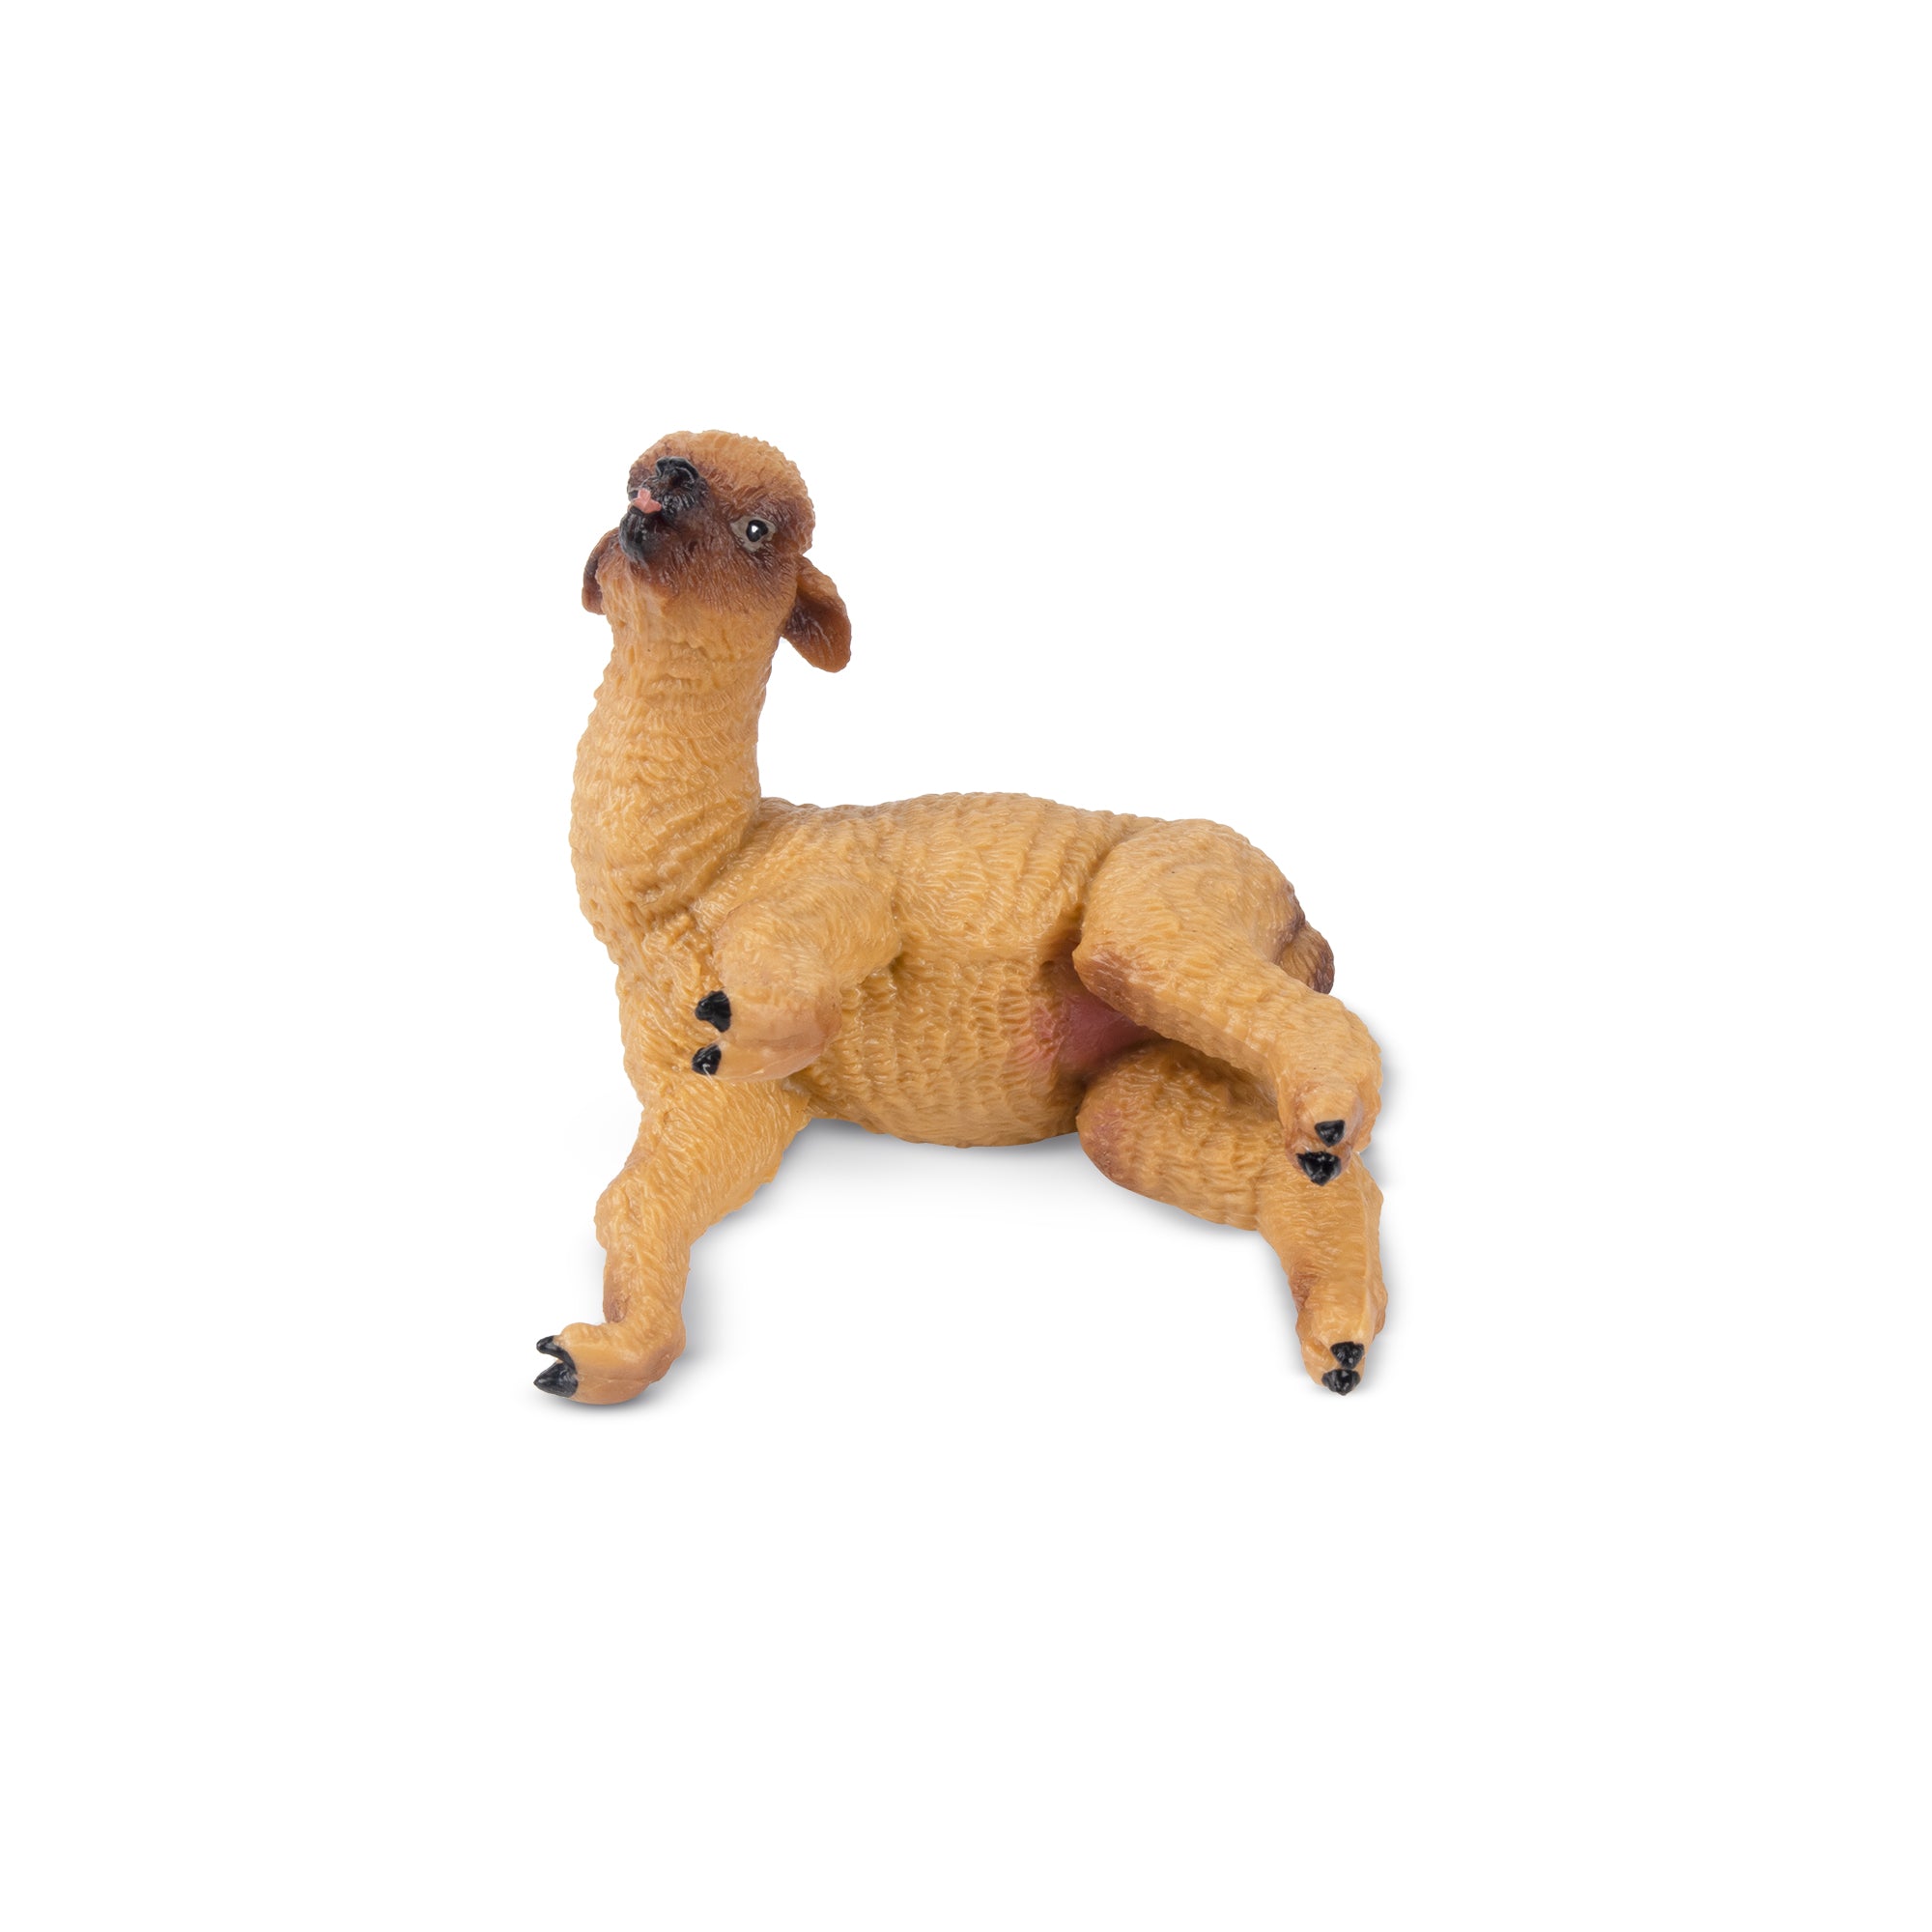 Toymany Playful Brown Alpaca Baby Figurine Toy